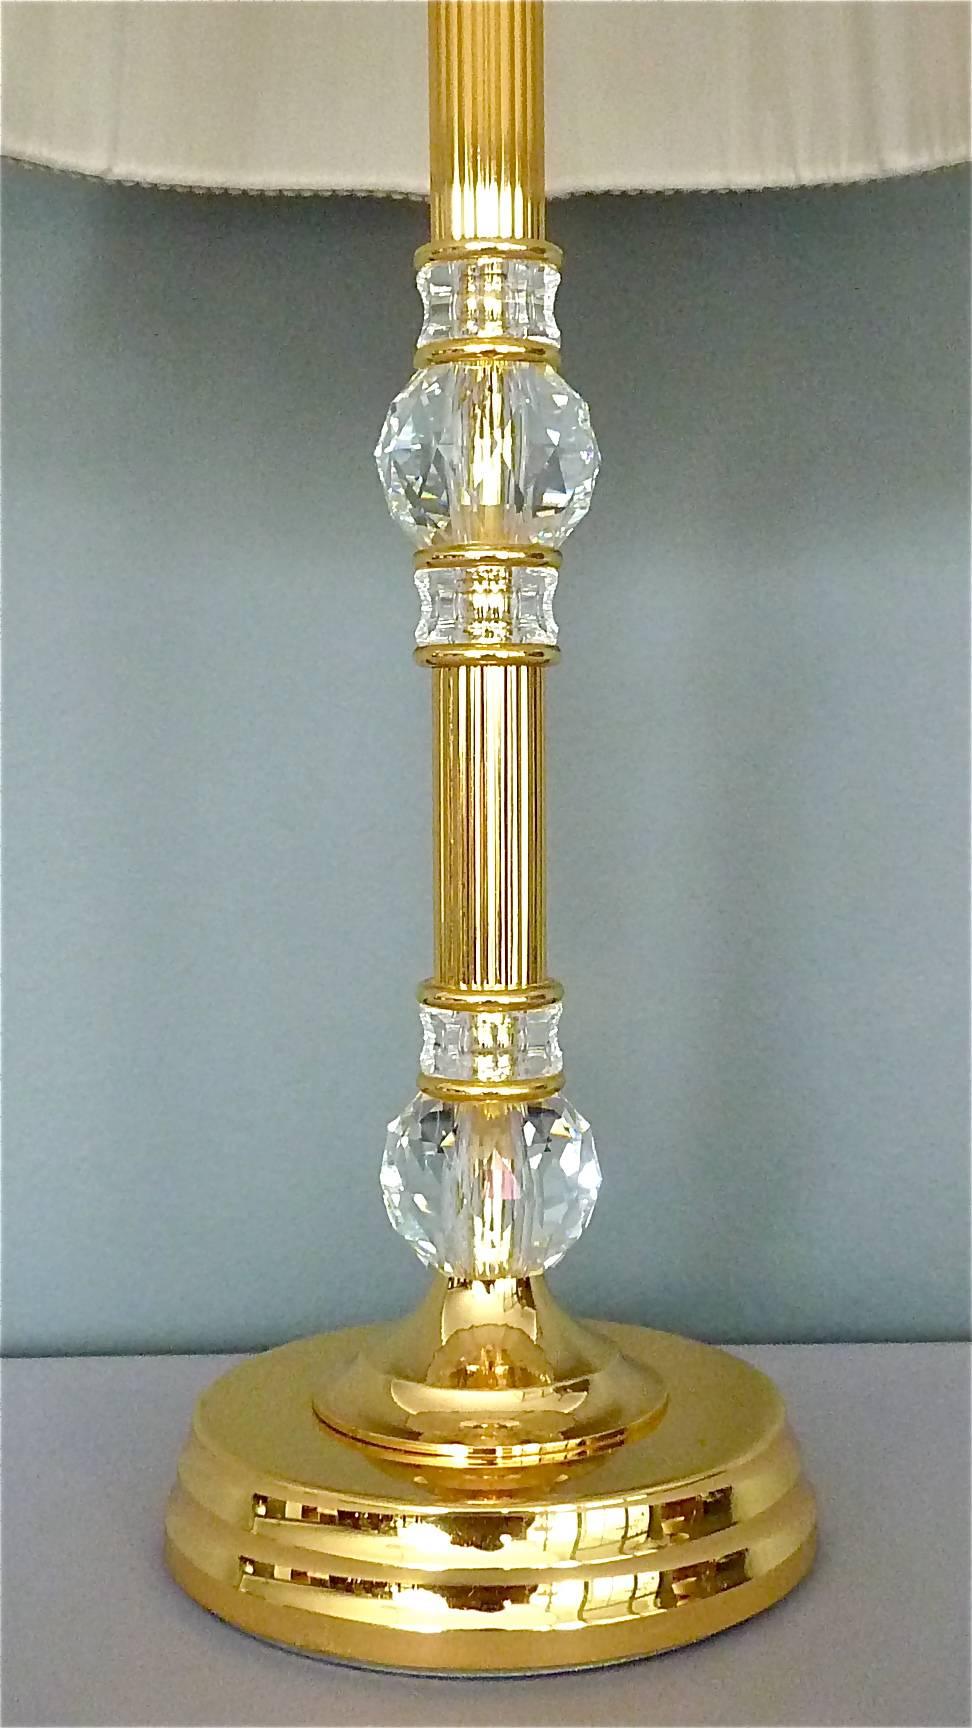 Belle et noble lampe de table fabriquée par Palwa, Allemagne, vers 1970. Elle est composée d'une base et d'une tige en laiton doré avec de grosses boules en cristal facetté, taillées et polies à la main, qui brillent comme des diamants, et d'un